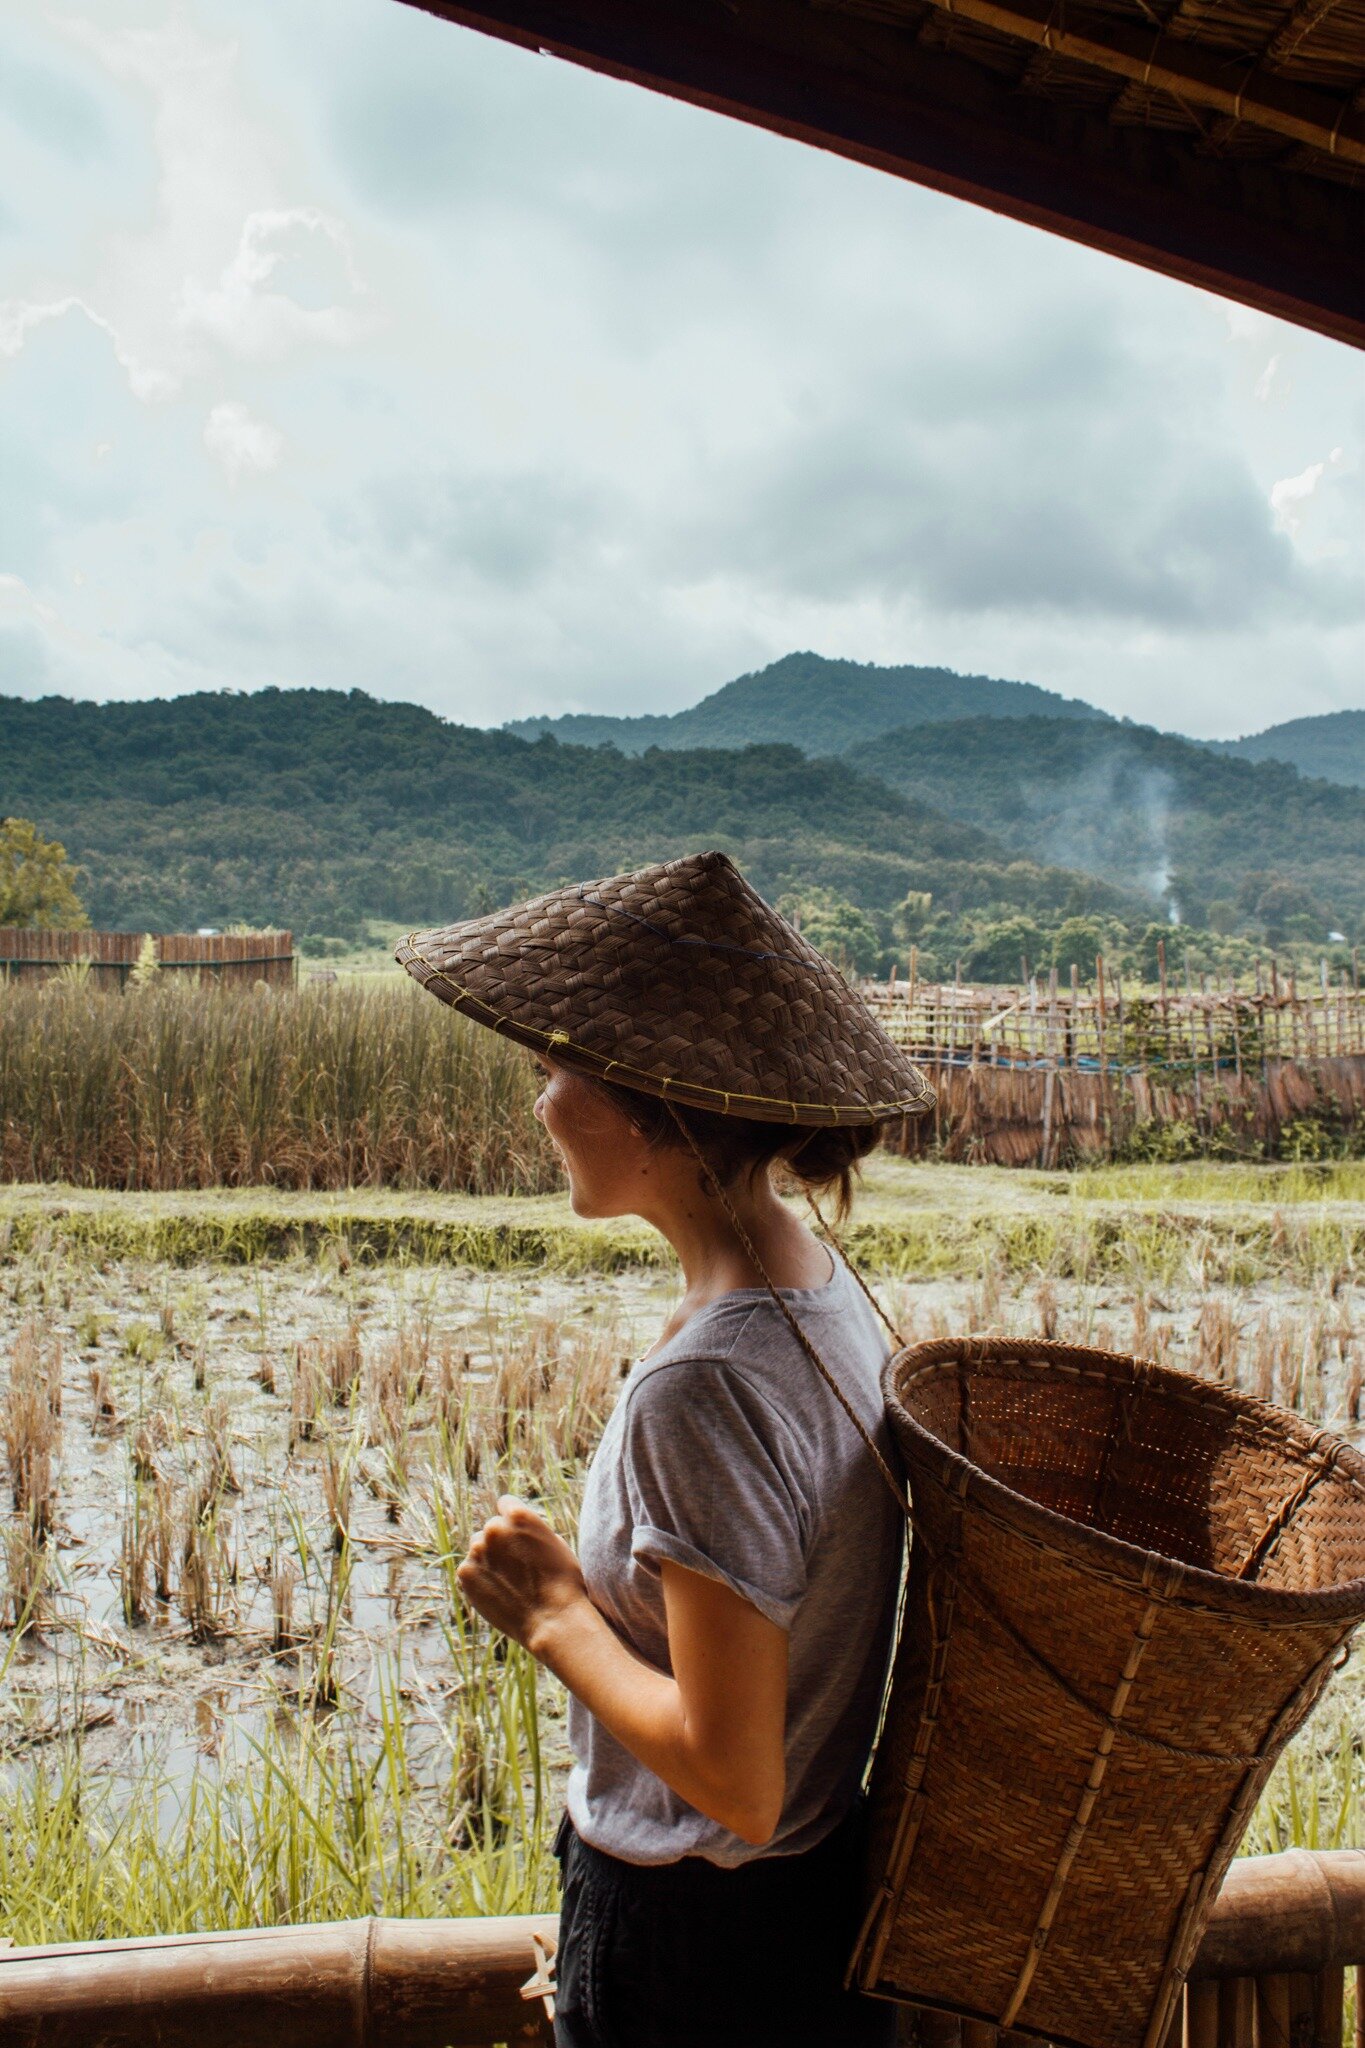 rice farming experience in Luang Prabang